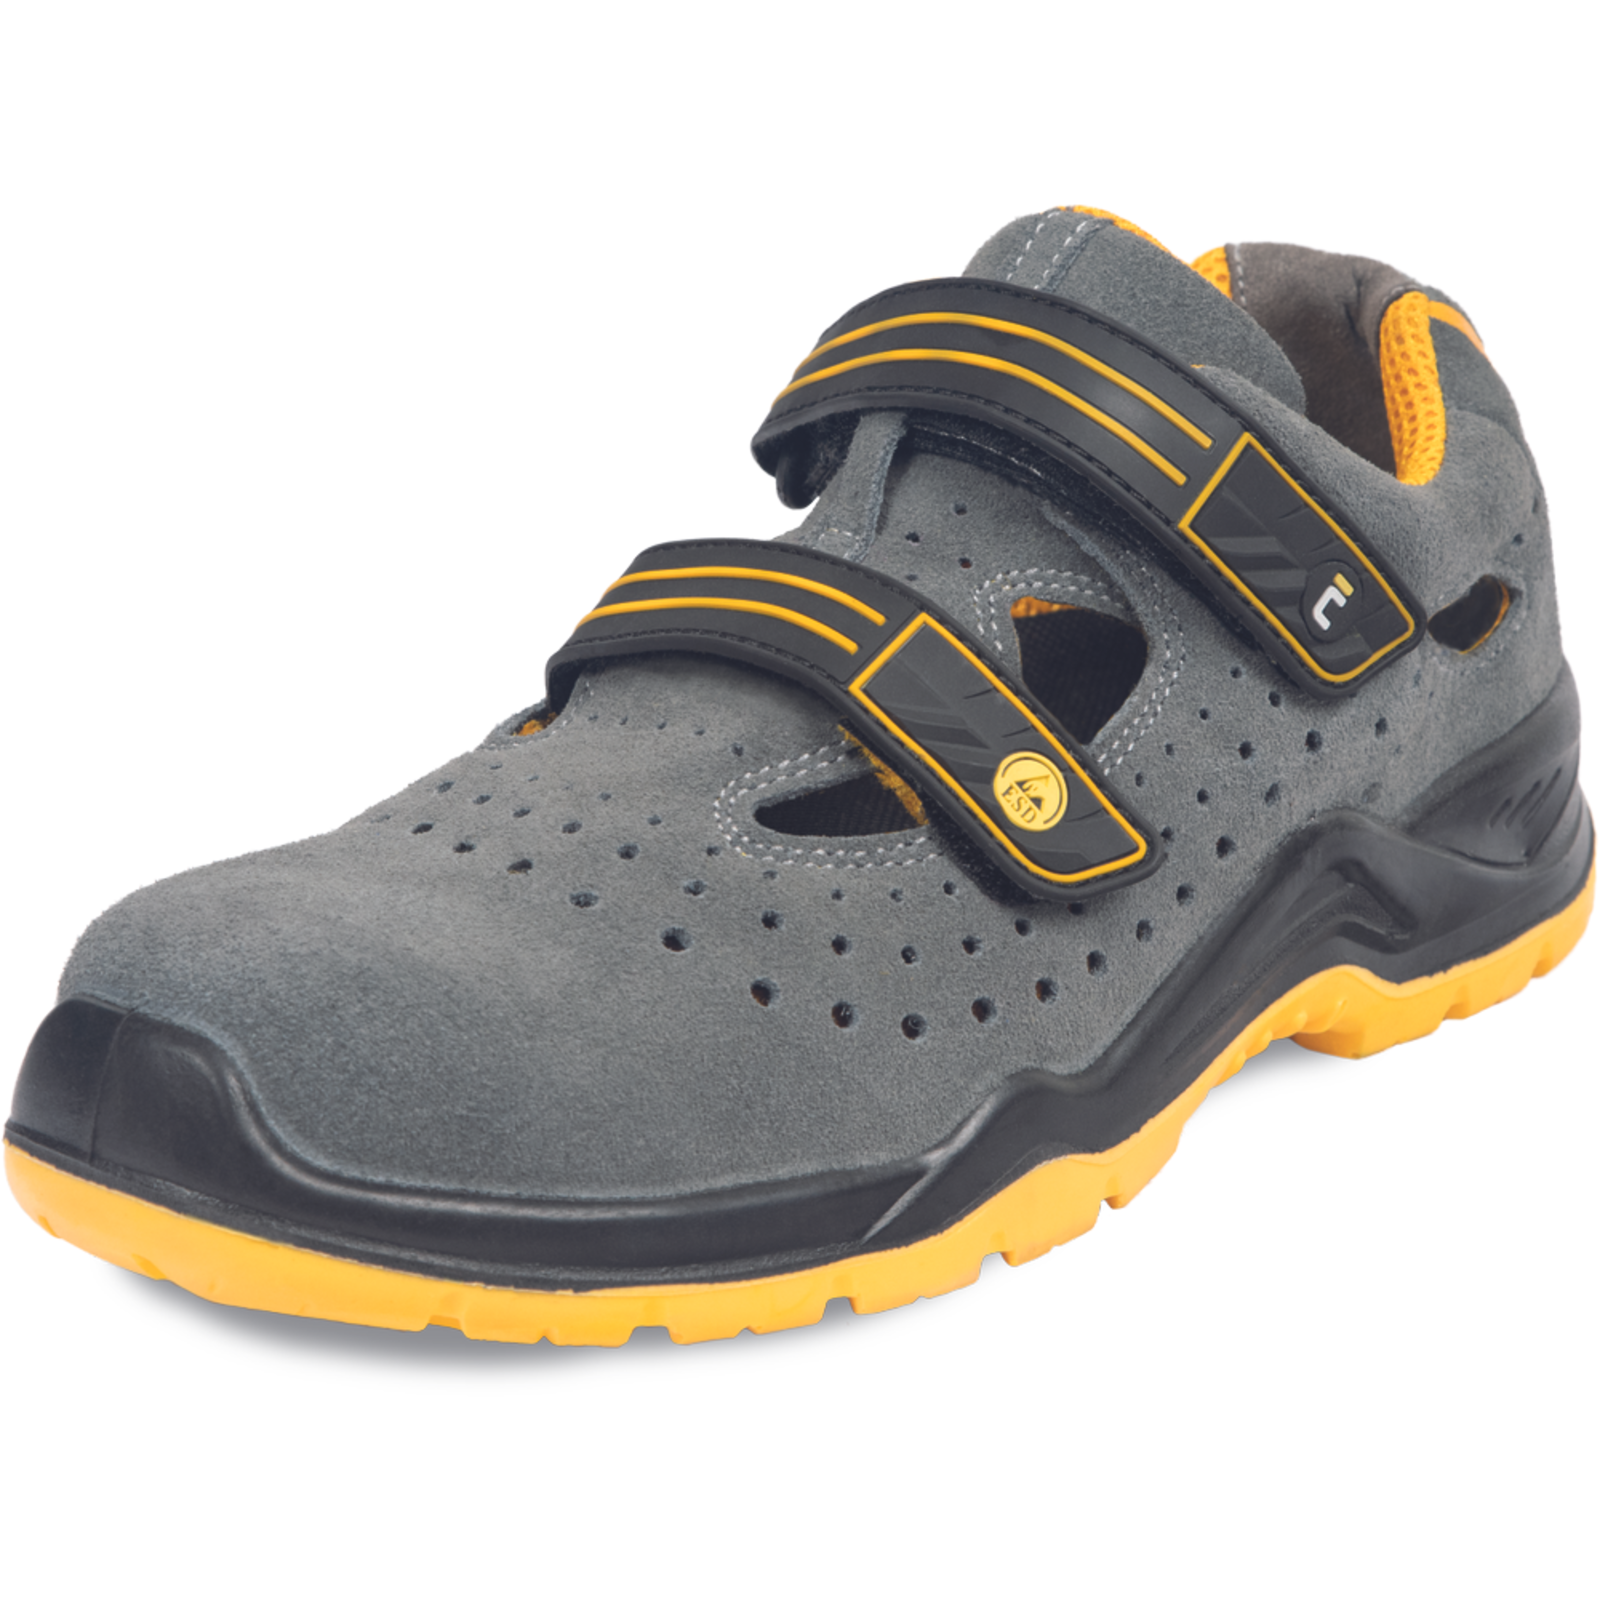 Pracovné bezpečnostné sandále Cerva Yuwill MF ESD S1P SRC - veľkosť: 46, farba: sivá/žltá